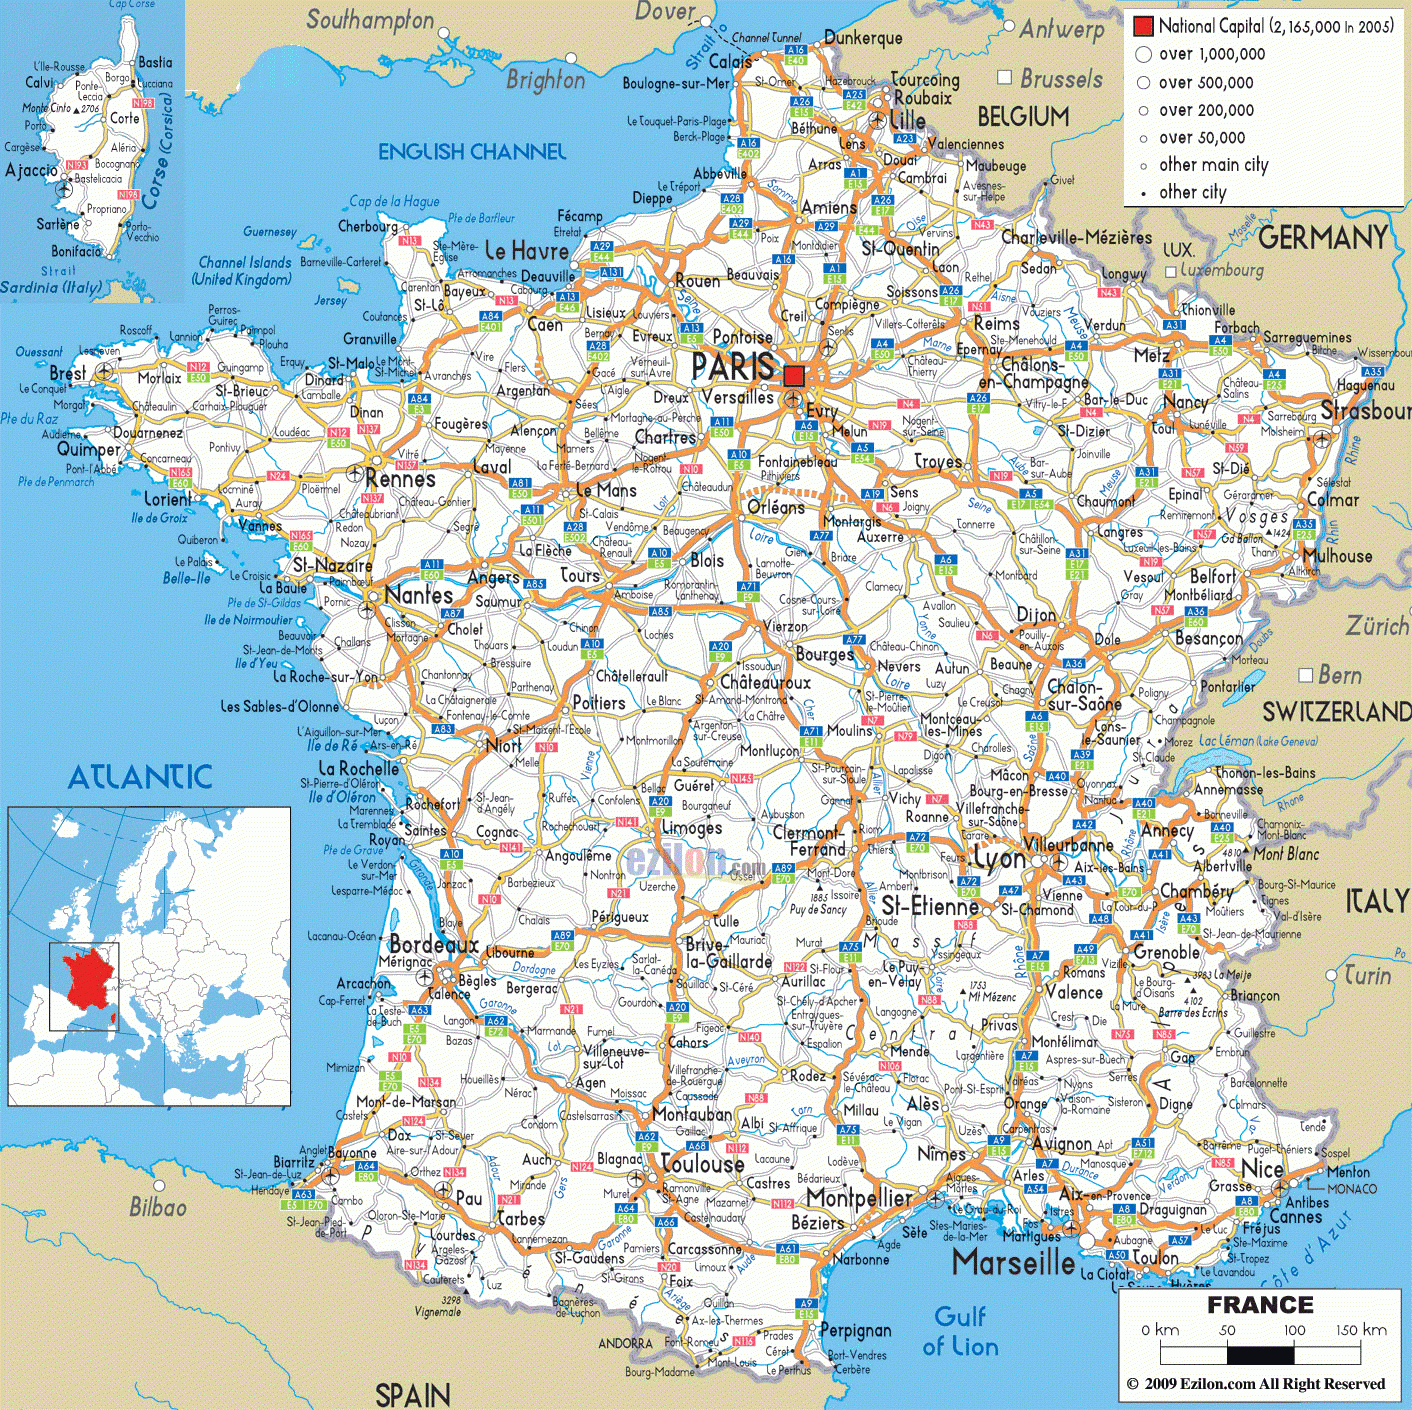 Cartograf.fr : Carte France : Page 3 concernant Carte De France Des Départements À Imprimer